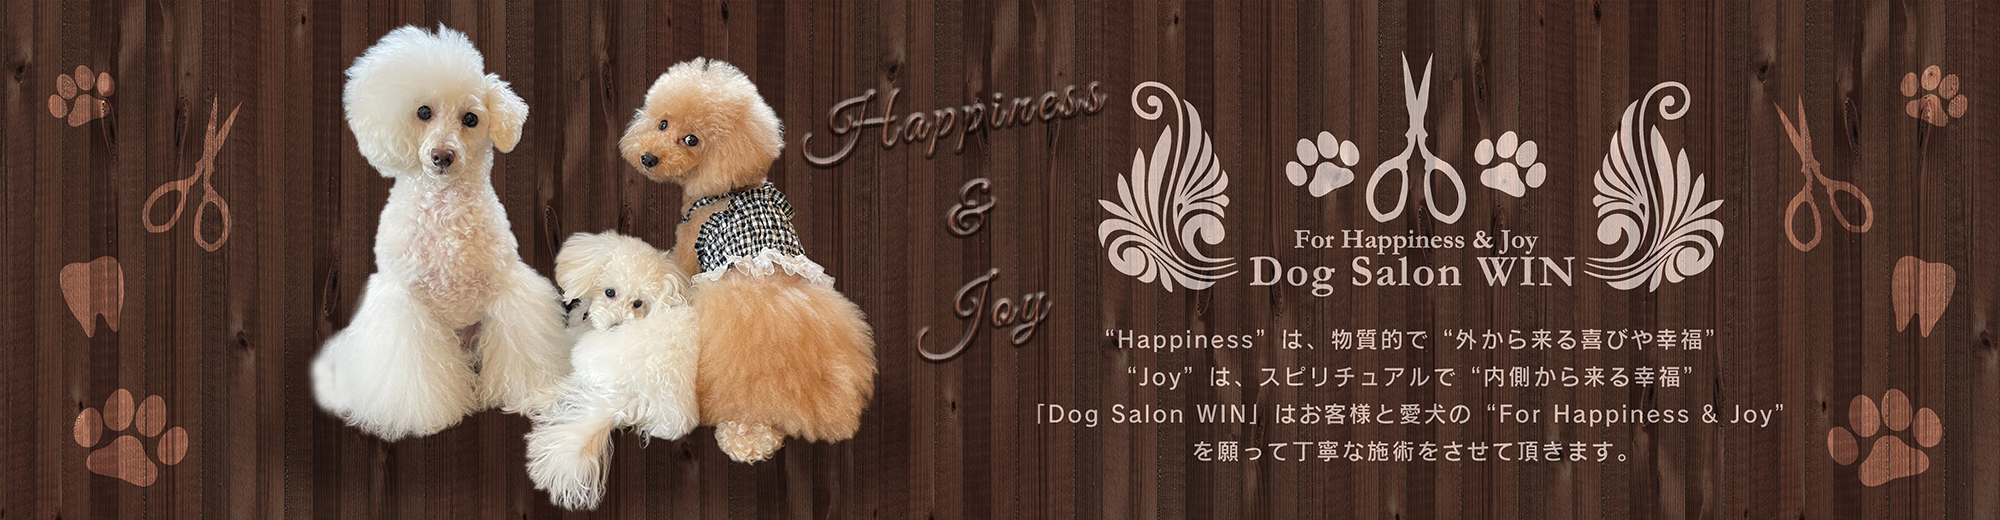 “Happiness”は、物質的で“外から来る喜びや幸福”“Joy”は、スピリチュアルで“内側から来る幸福”「Dog Salon WIN」はお客様と愛犬の“For Happiness & Joy”を願って丁寧な施術をさせて頂きます。